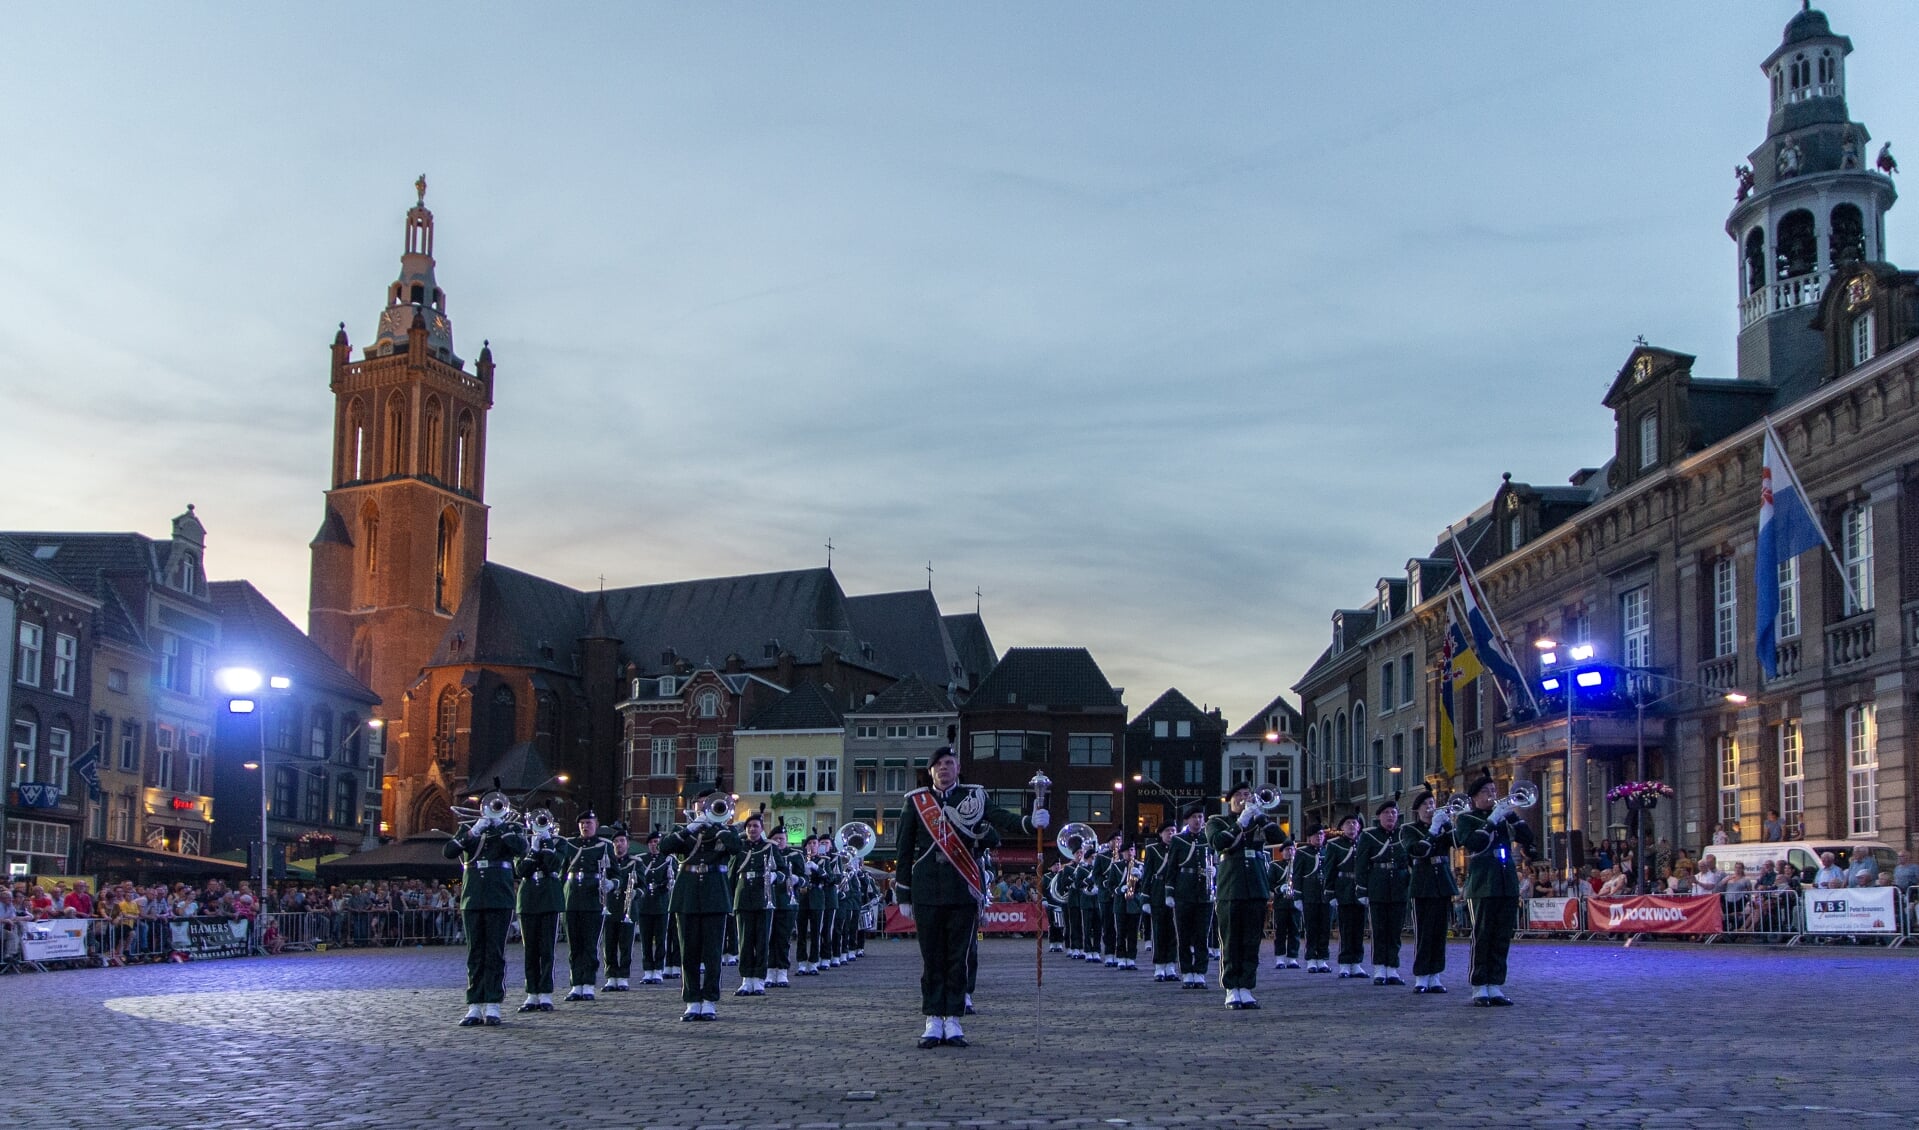 Chr. Muziekvereniging DVS uit Katwijk bestaat 65 jaar en viert dit met een taptoe.